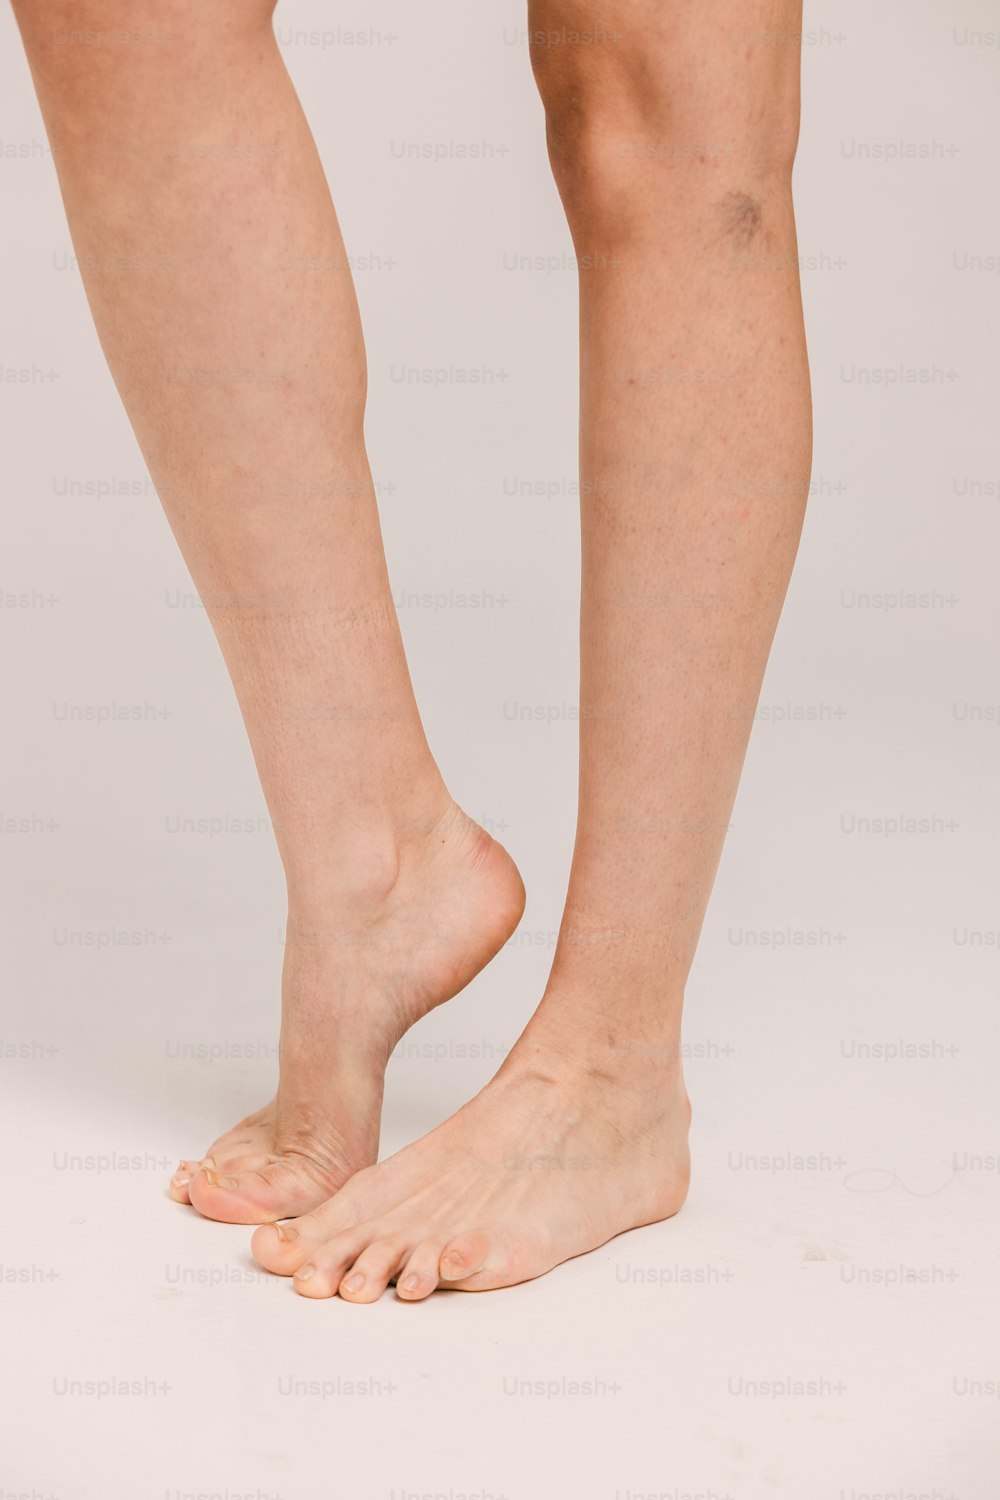 Una persona parada sobre una superficie blanca con los pies descalzos